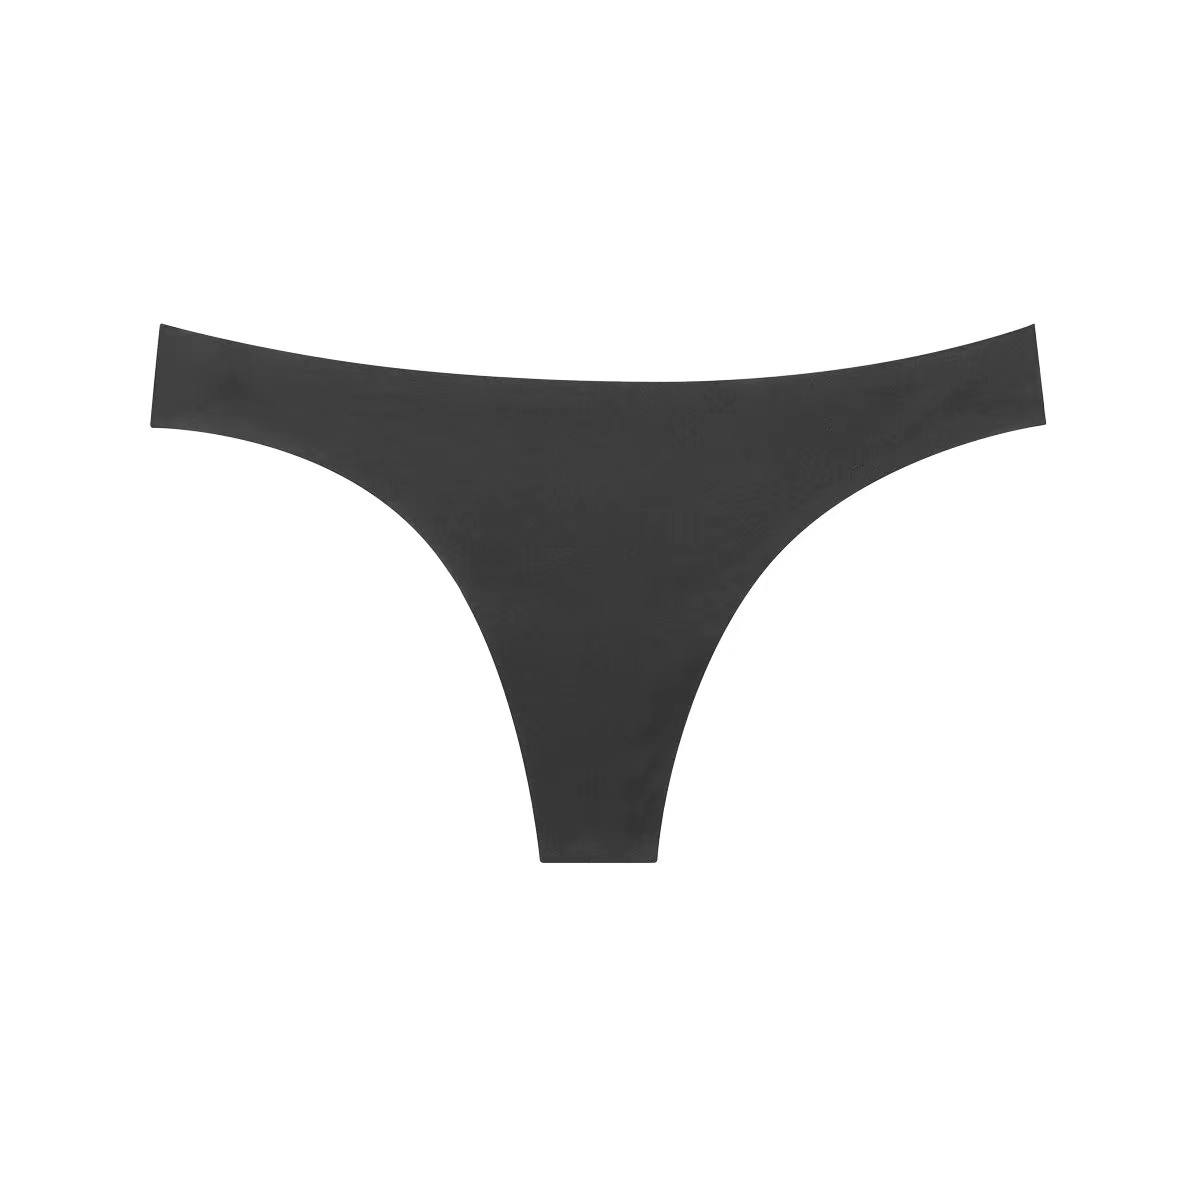 Period Absorption Underwear